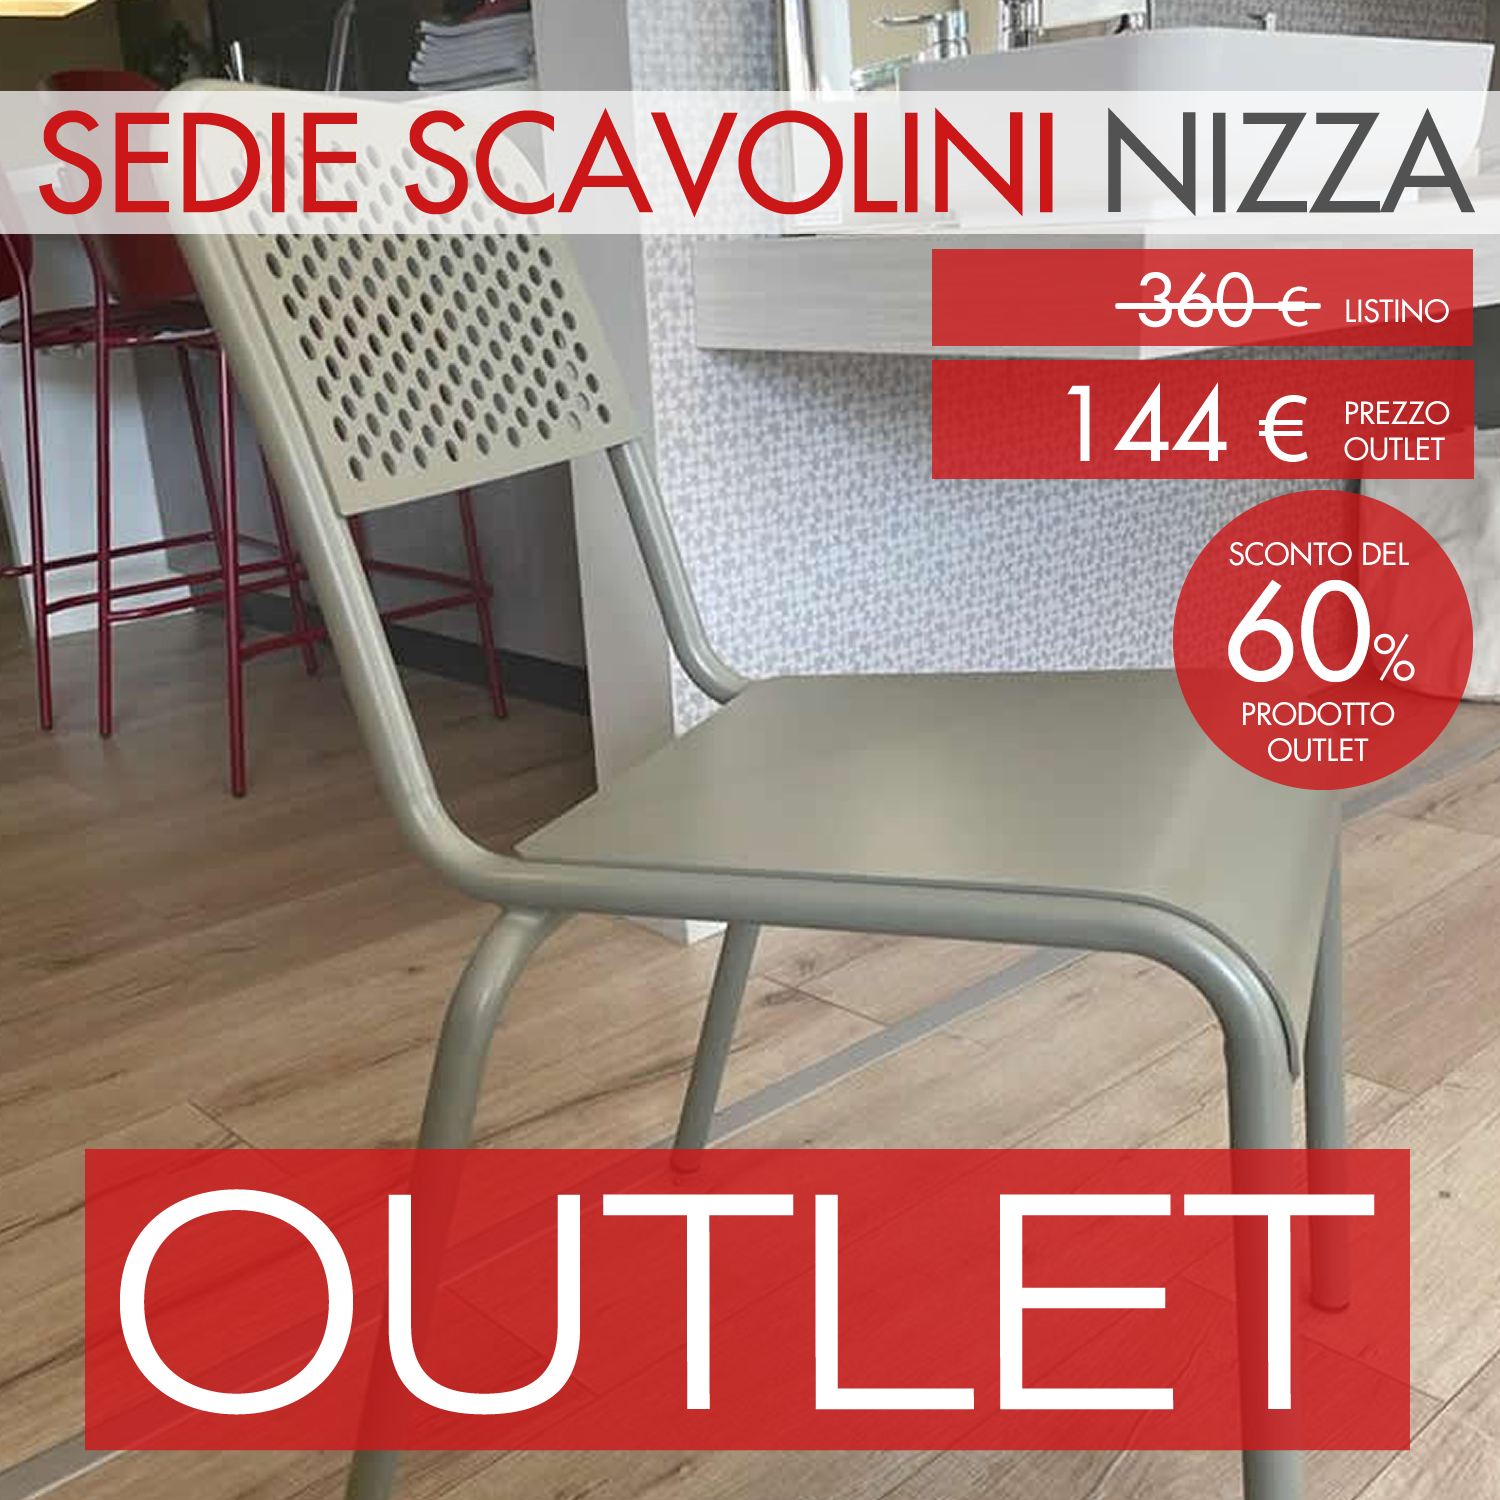 Sedia Scavolini modello Nizza - Sanna Mobili - Arredamento in Sardegna